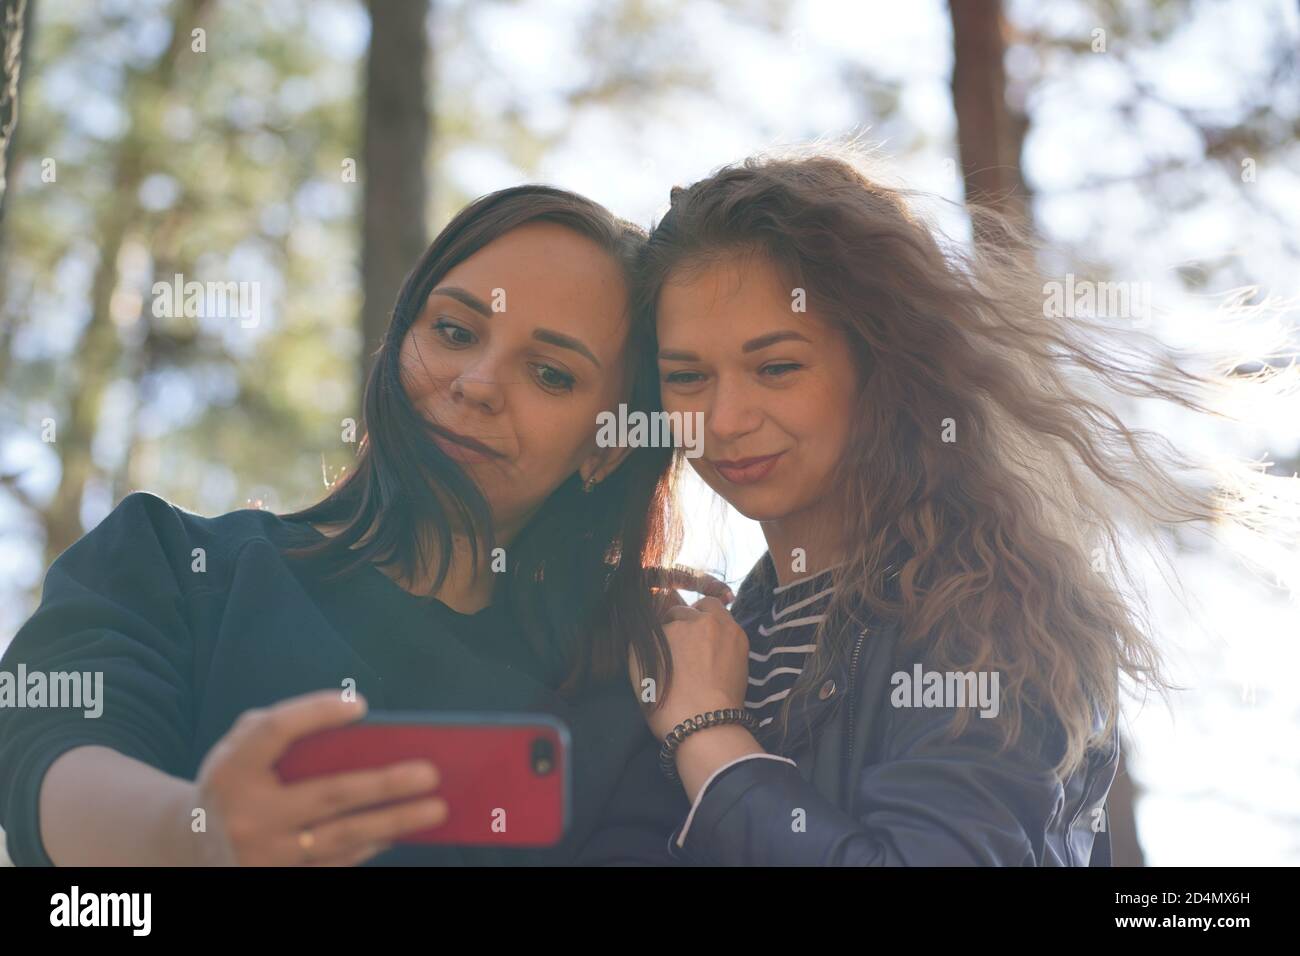 Primer plano de mujeres jóvenes tomando selfie en el smartphone en madera. Bonitas mujeres fotografiando en el teléfono móvil. Foto de stock